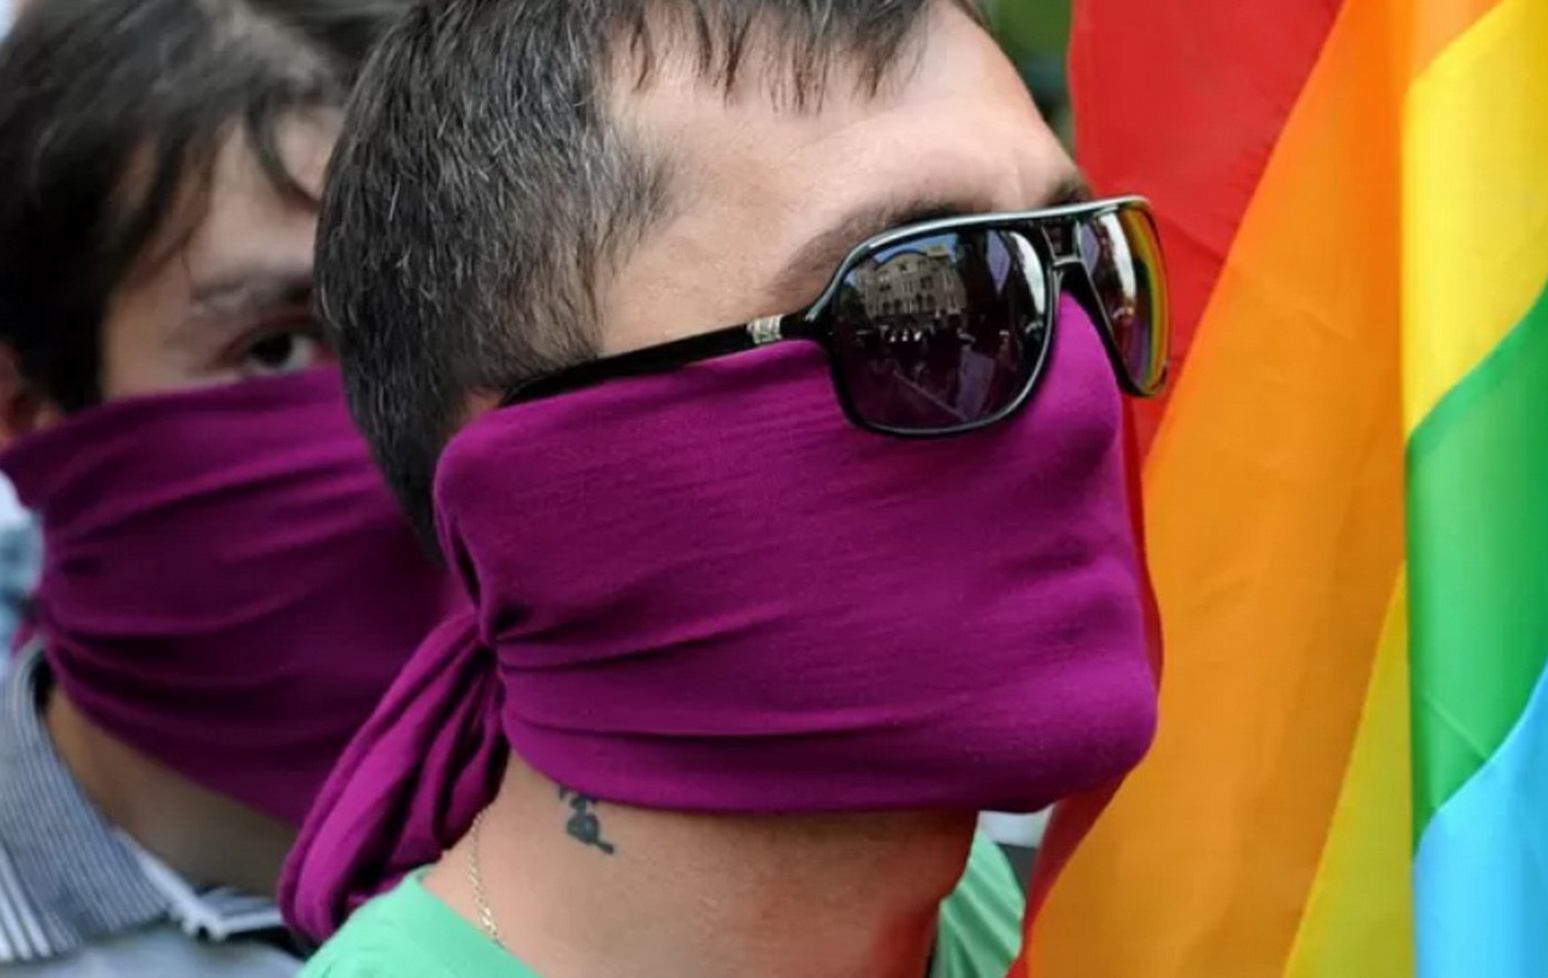 ЛГБТ-активисты готовятся к шествию в Тбилиси, ультраконсерваторы - к его срыву